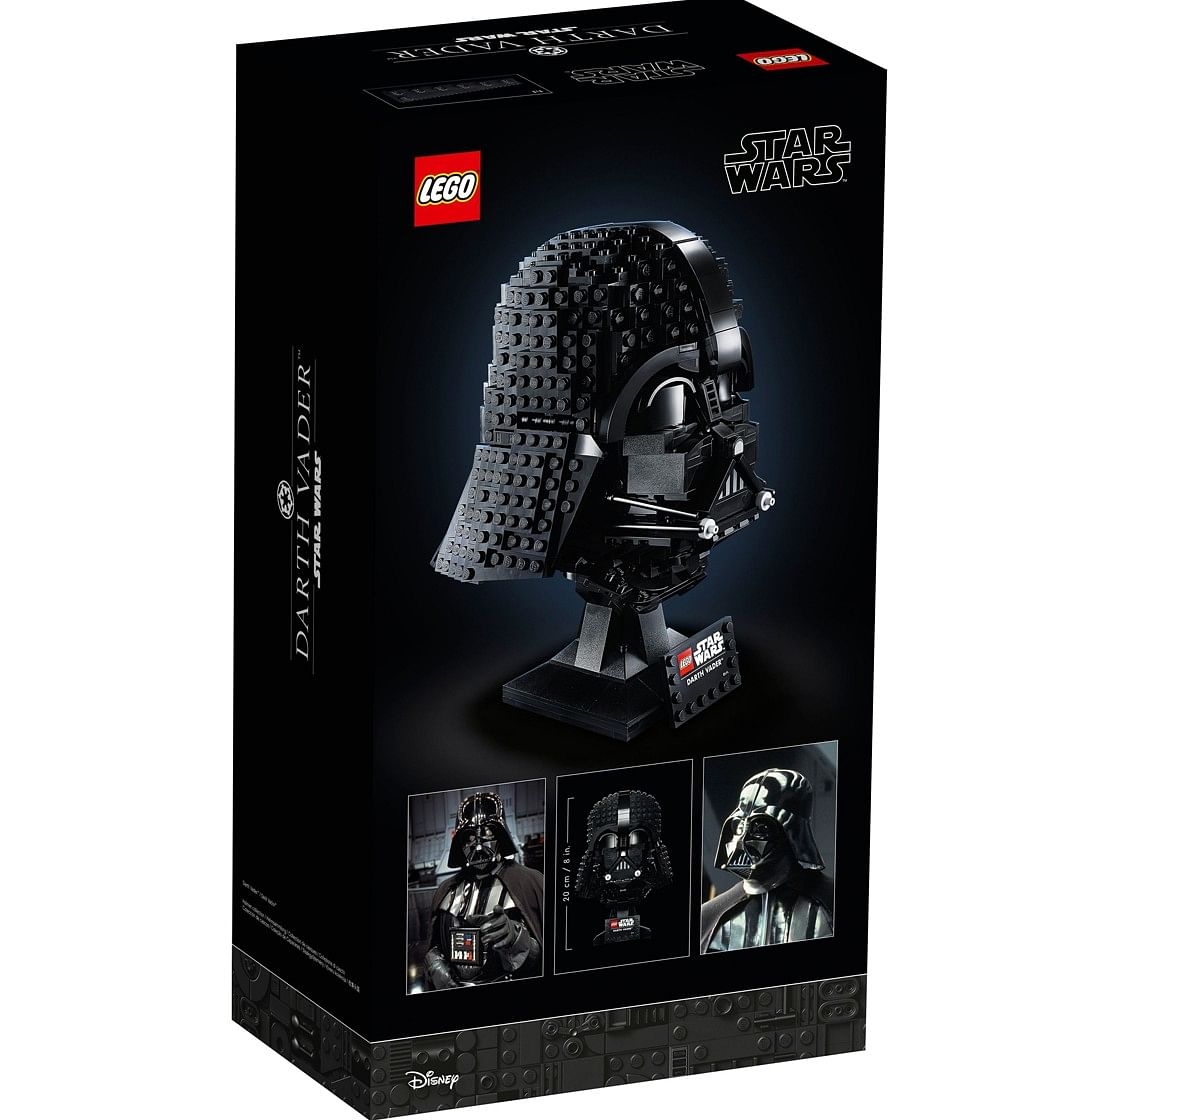 Lego Star Wars Darth Vader Helmet 75304 Collectible Building Kit 834 Pieces Multicolor 18Y+